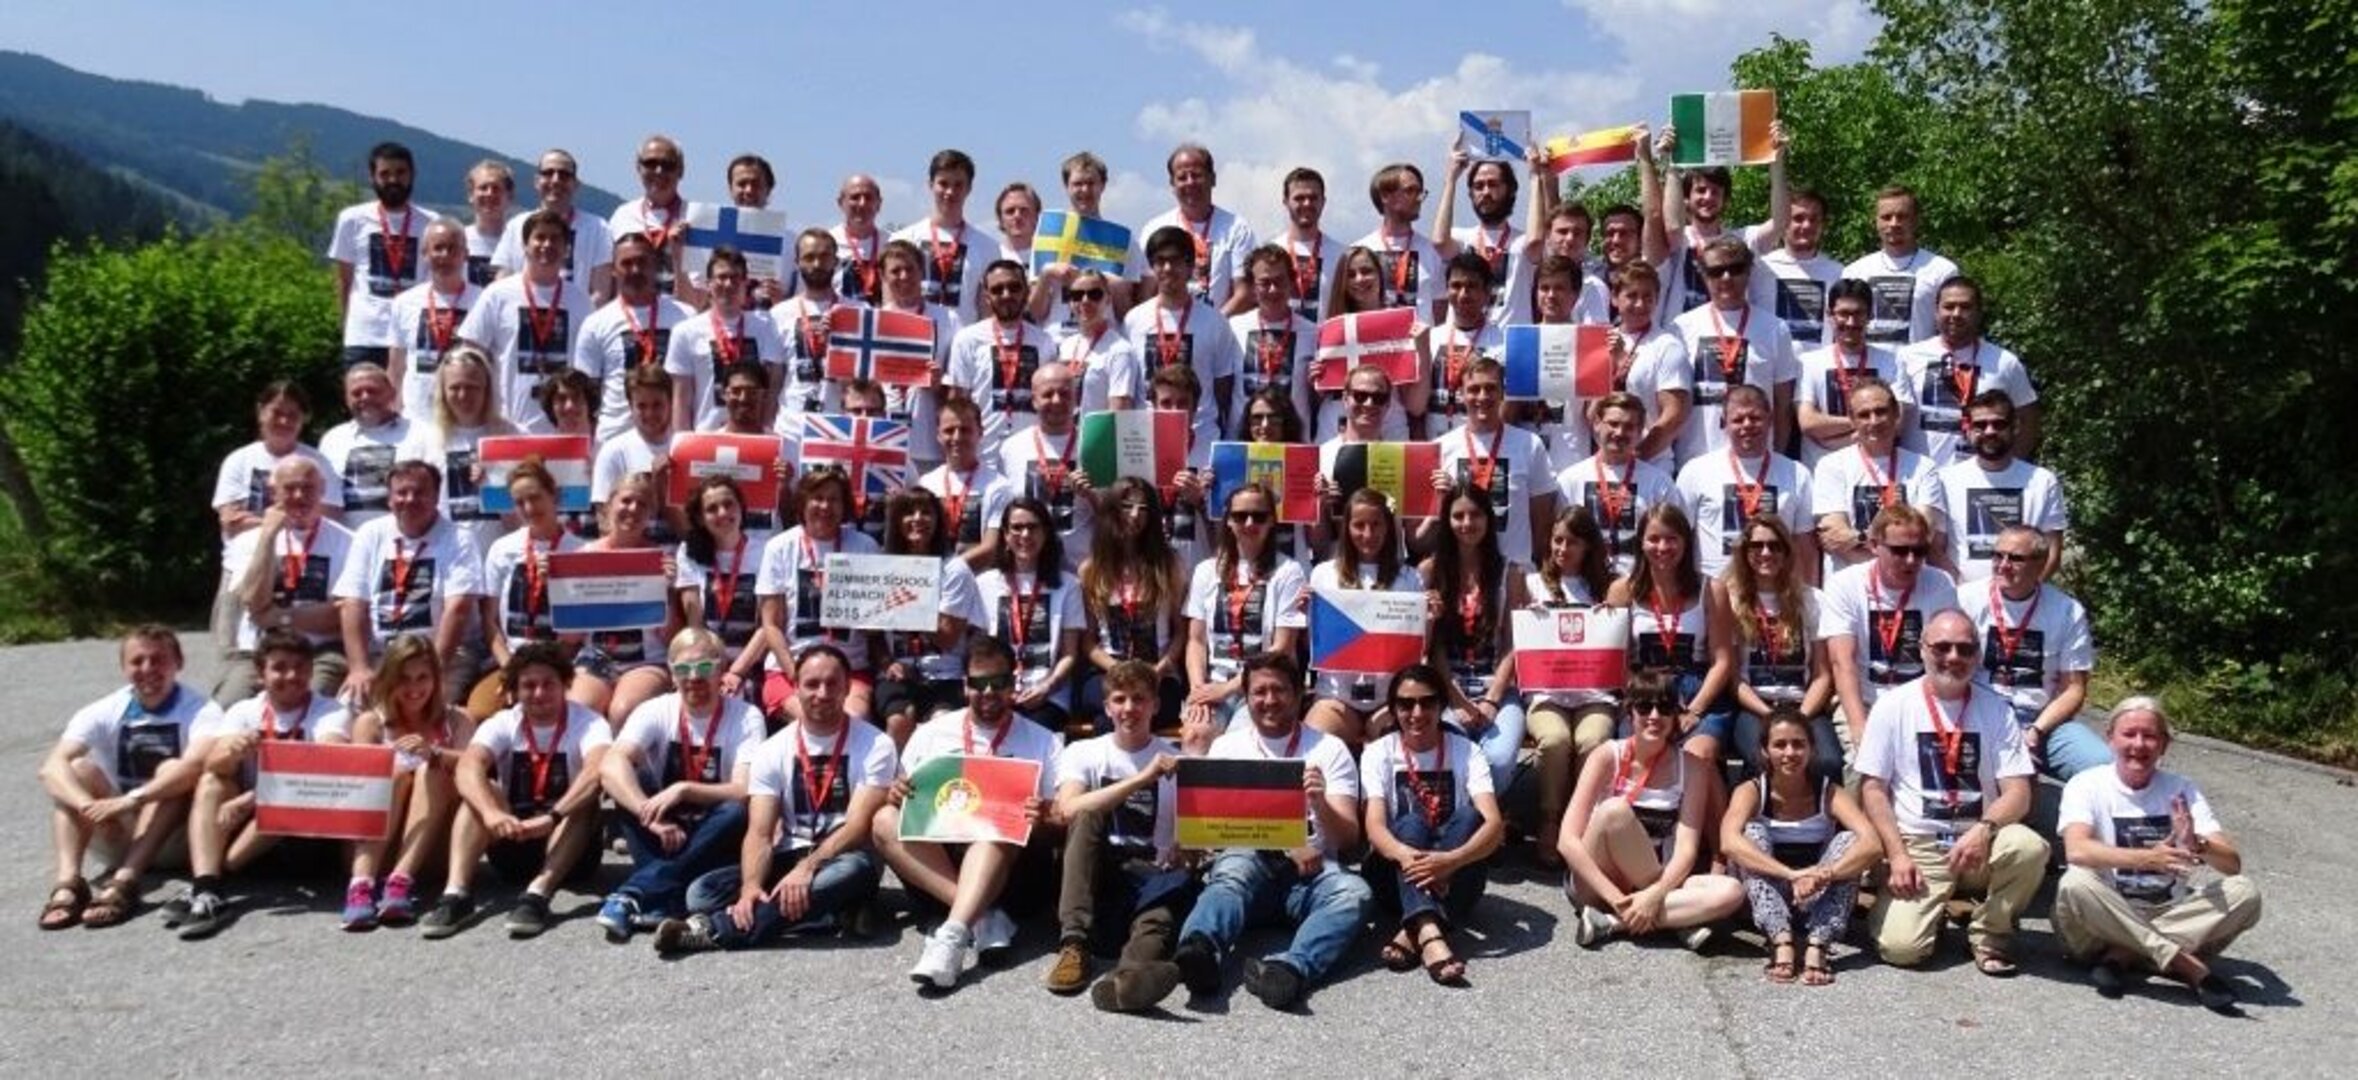 Teilnehmergruppenphoto der Sommerschule Alpbach 2015 